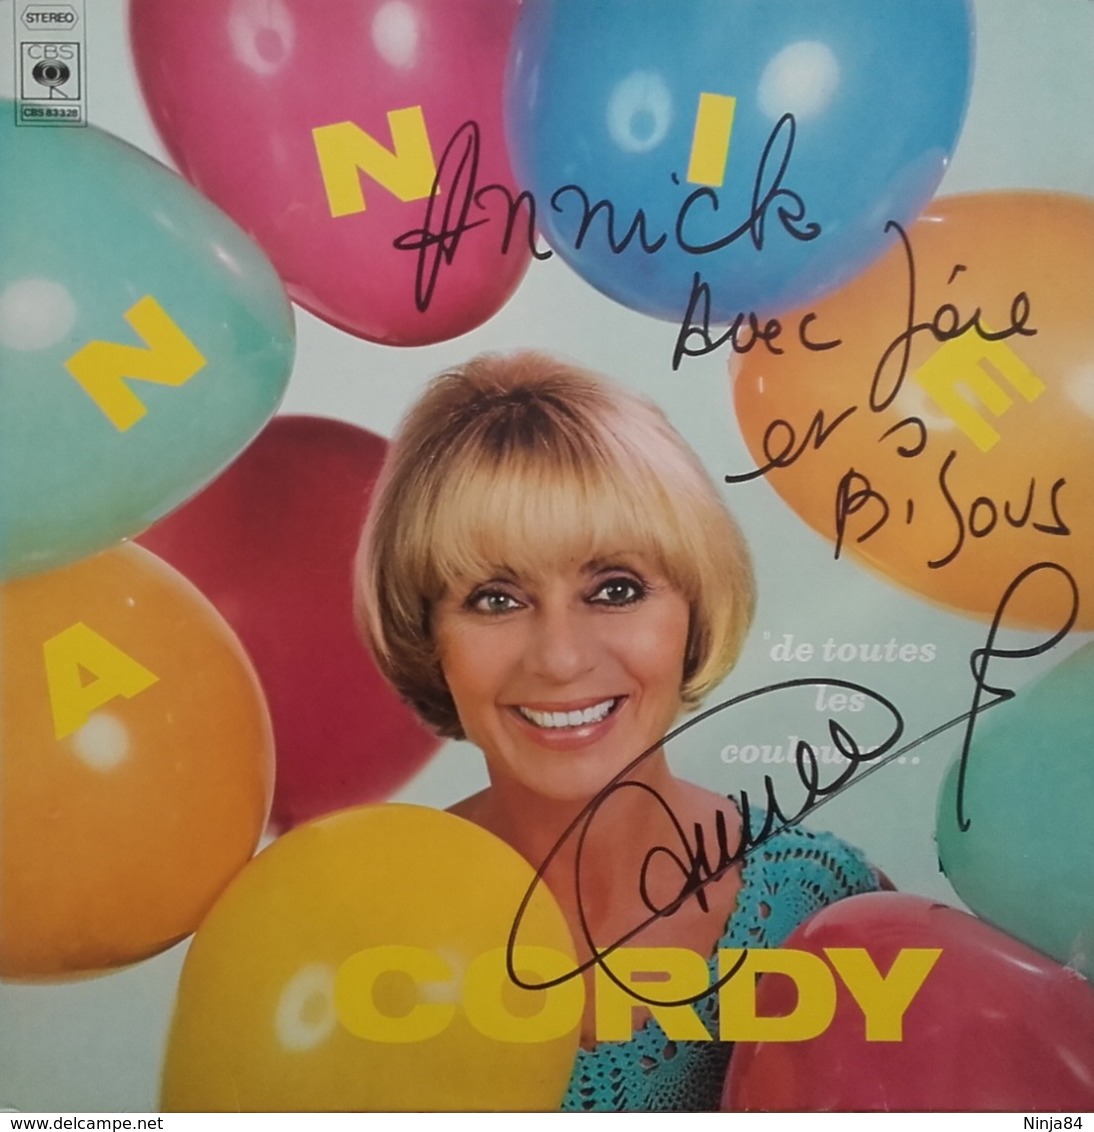 LP 33 RPM (12")  Annie Cordy / Gilbert Bécaud ‎ "  De Toutes Les Couleurs…  " - Other - French Music